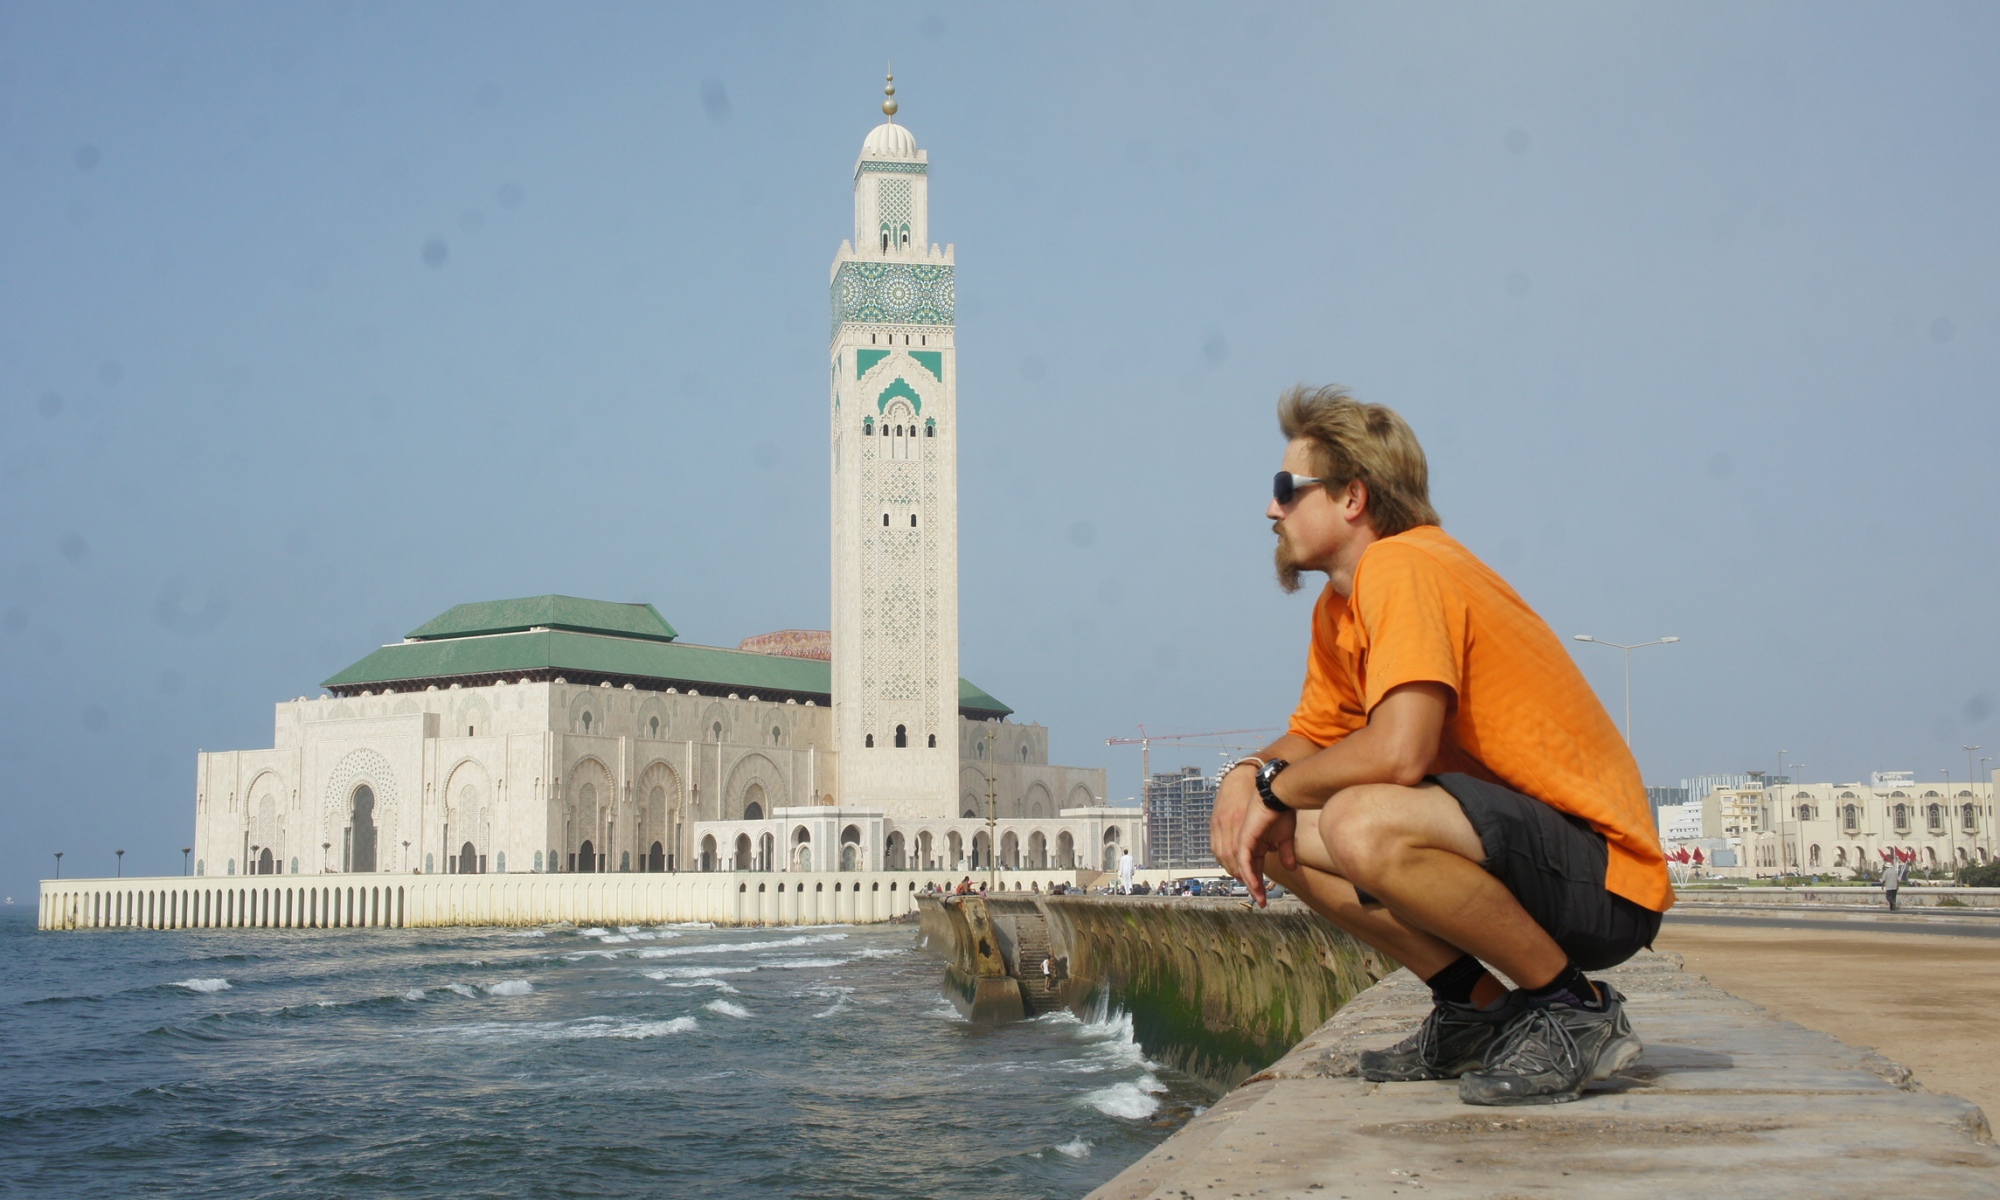 Chris in Casablanca